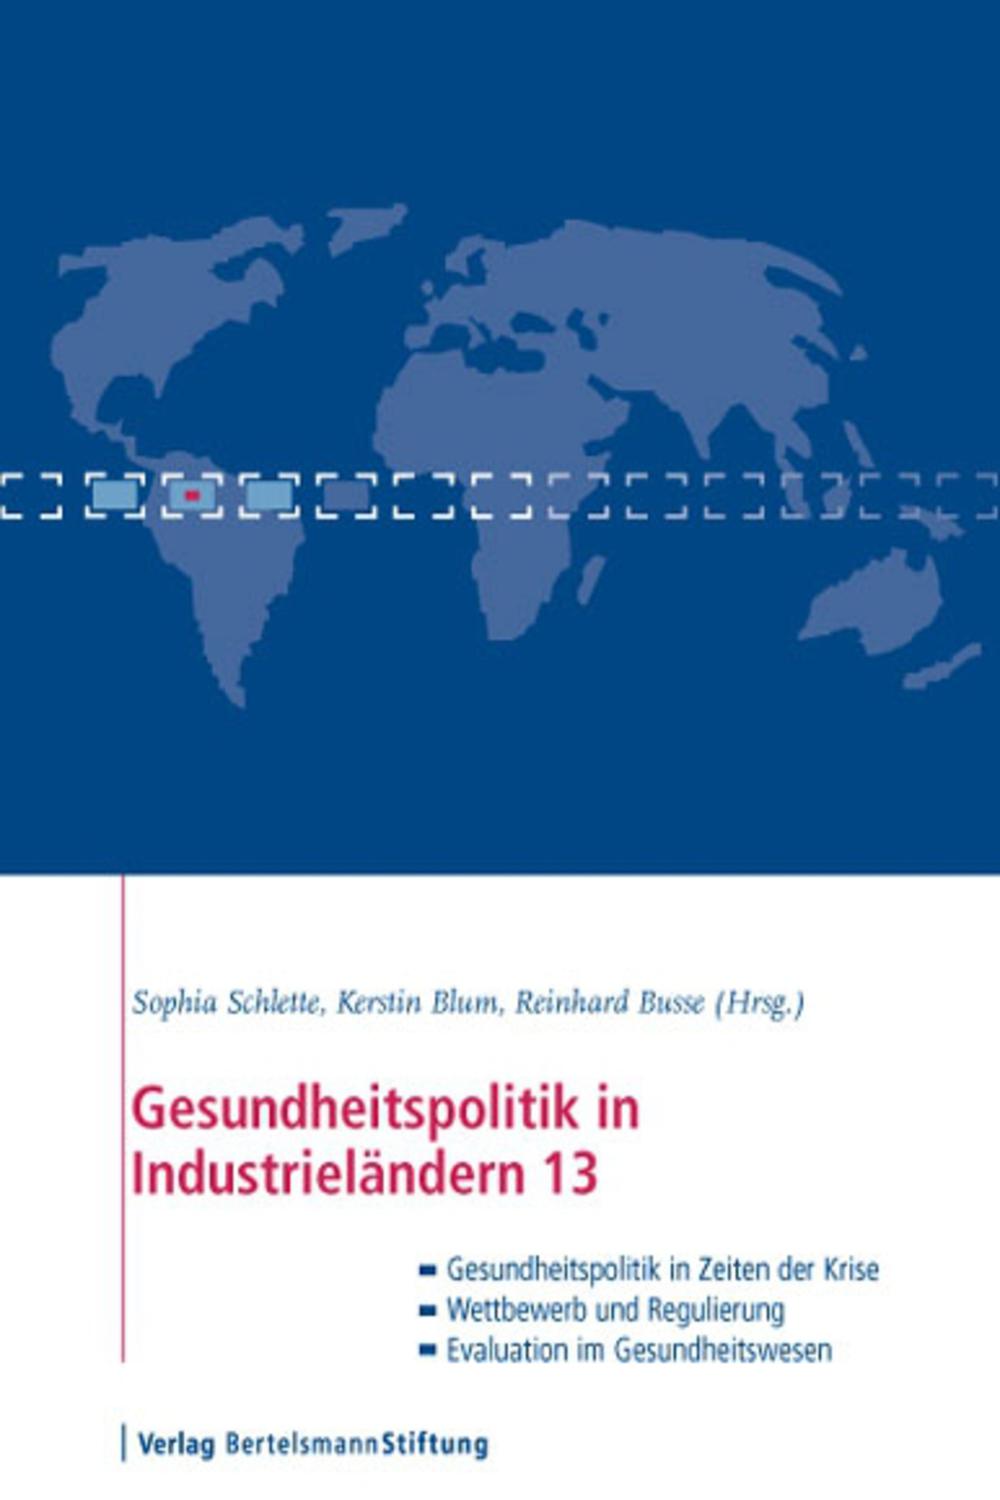 Gesundheitspolitik in Industrieländern 13 - Sophia Schlette, Kerstin Blum, Reinhard Busse